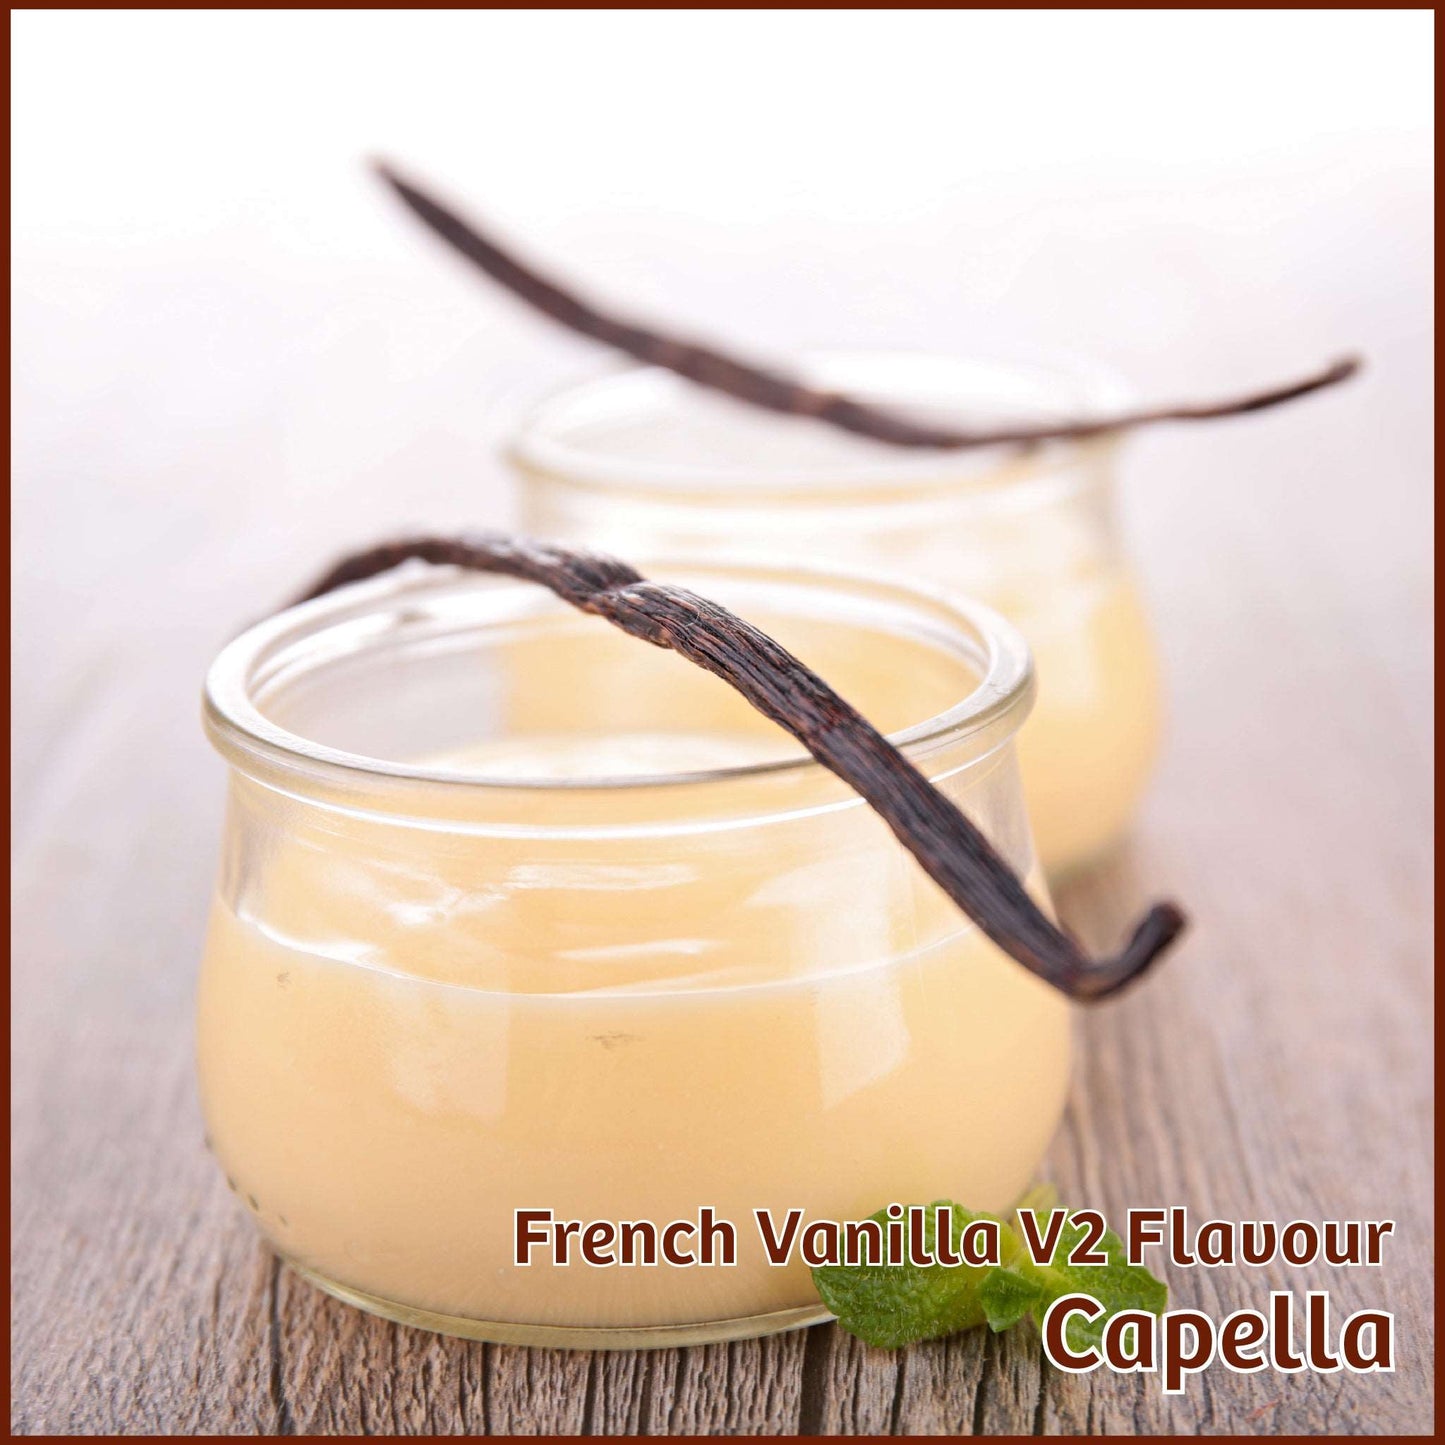 French Vanilla V2 Flavour - Capella - Flavour Fog - Canada's flavour depot.